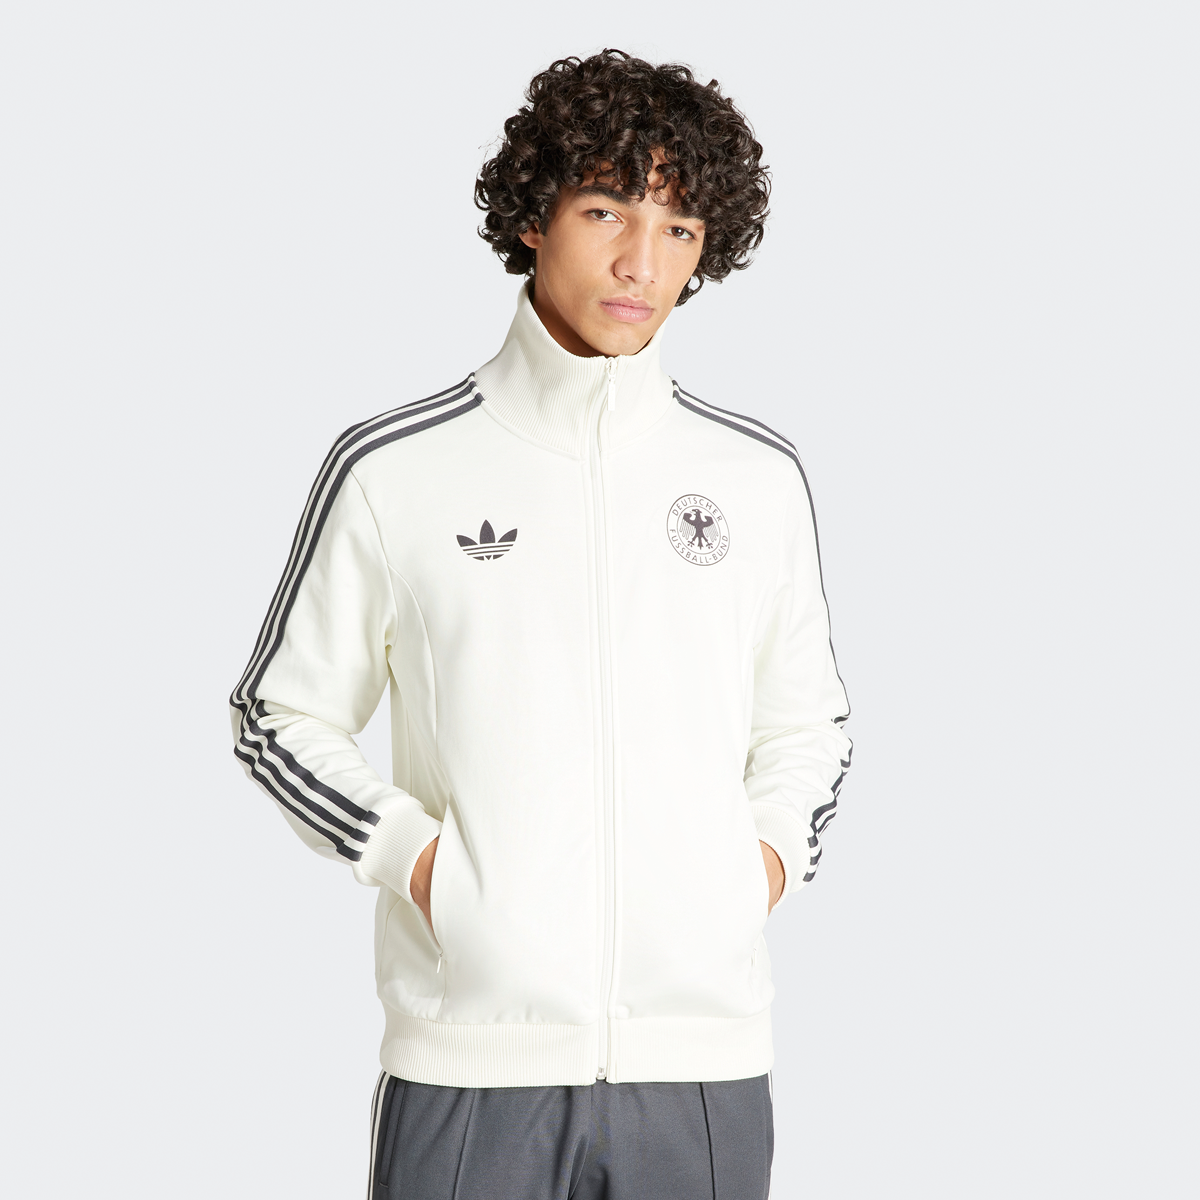 Adidas Originals Dfb Duitsland 3-stripes Trainingsjack Football Pack Trainingsjassen Heren off white maat: XL beschikbare maaten:S M L XL